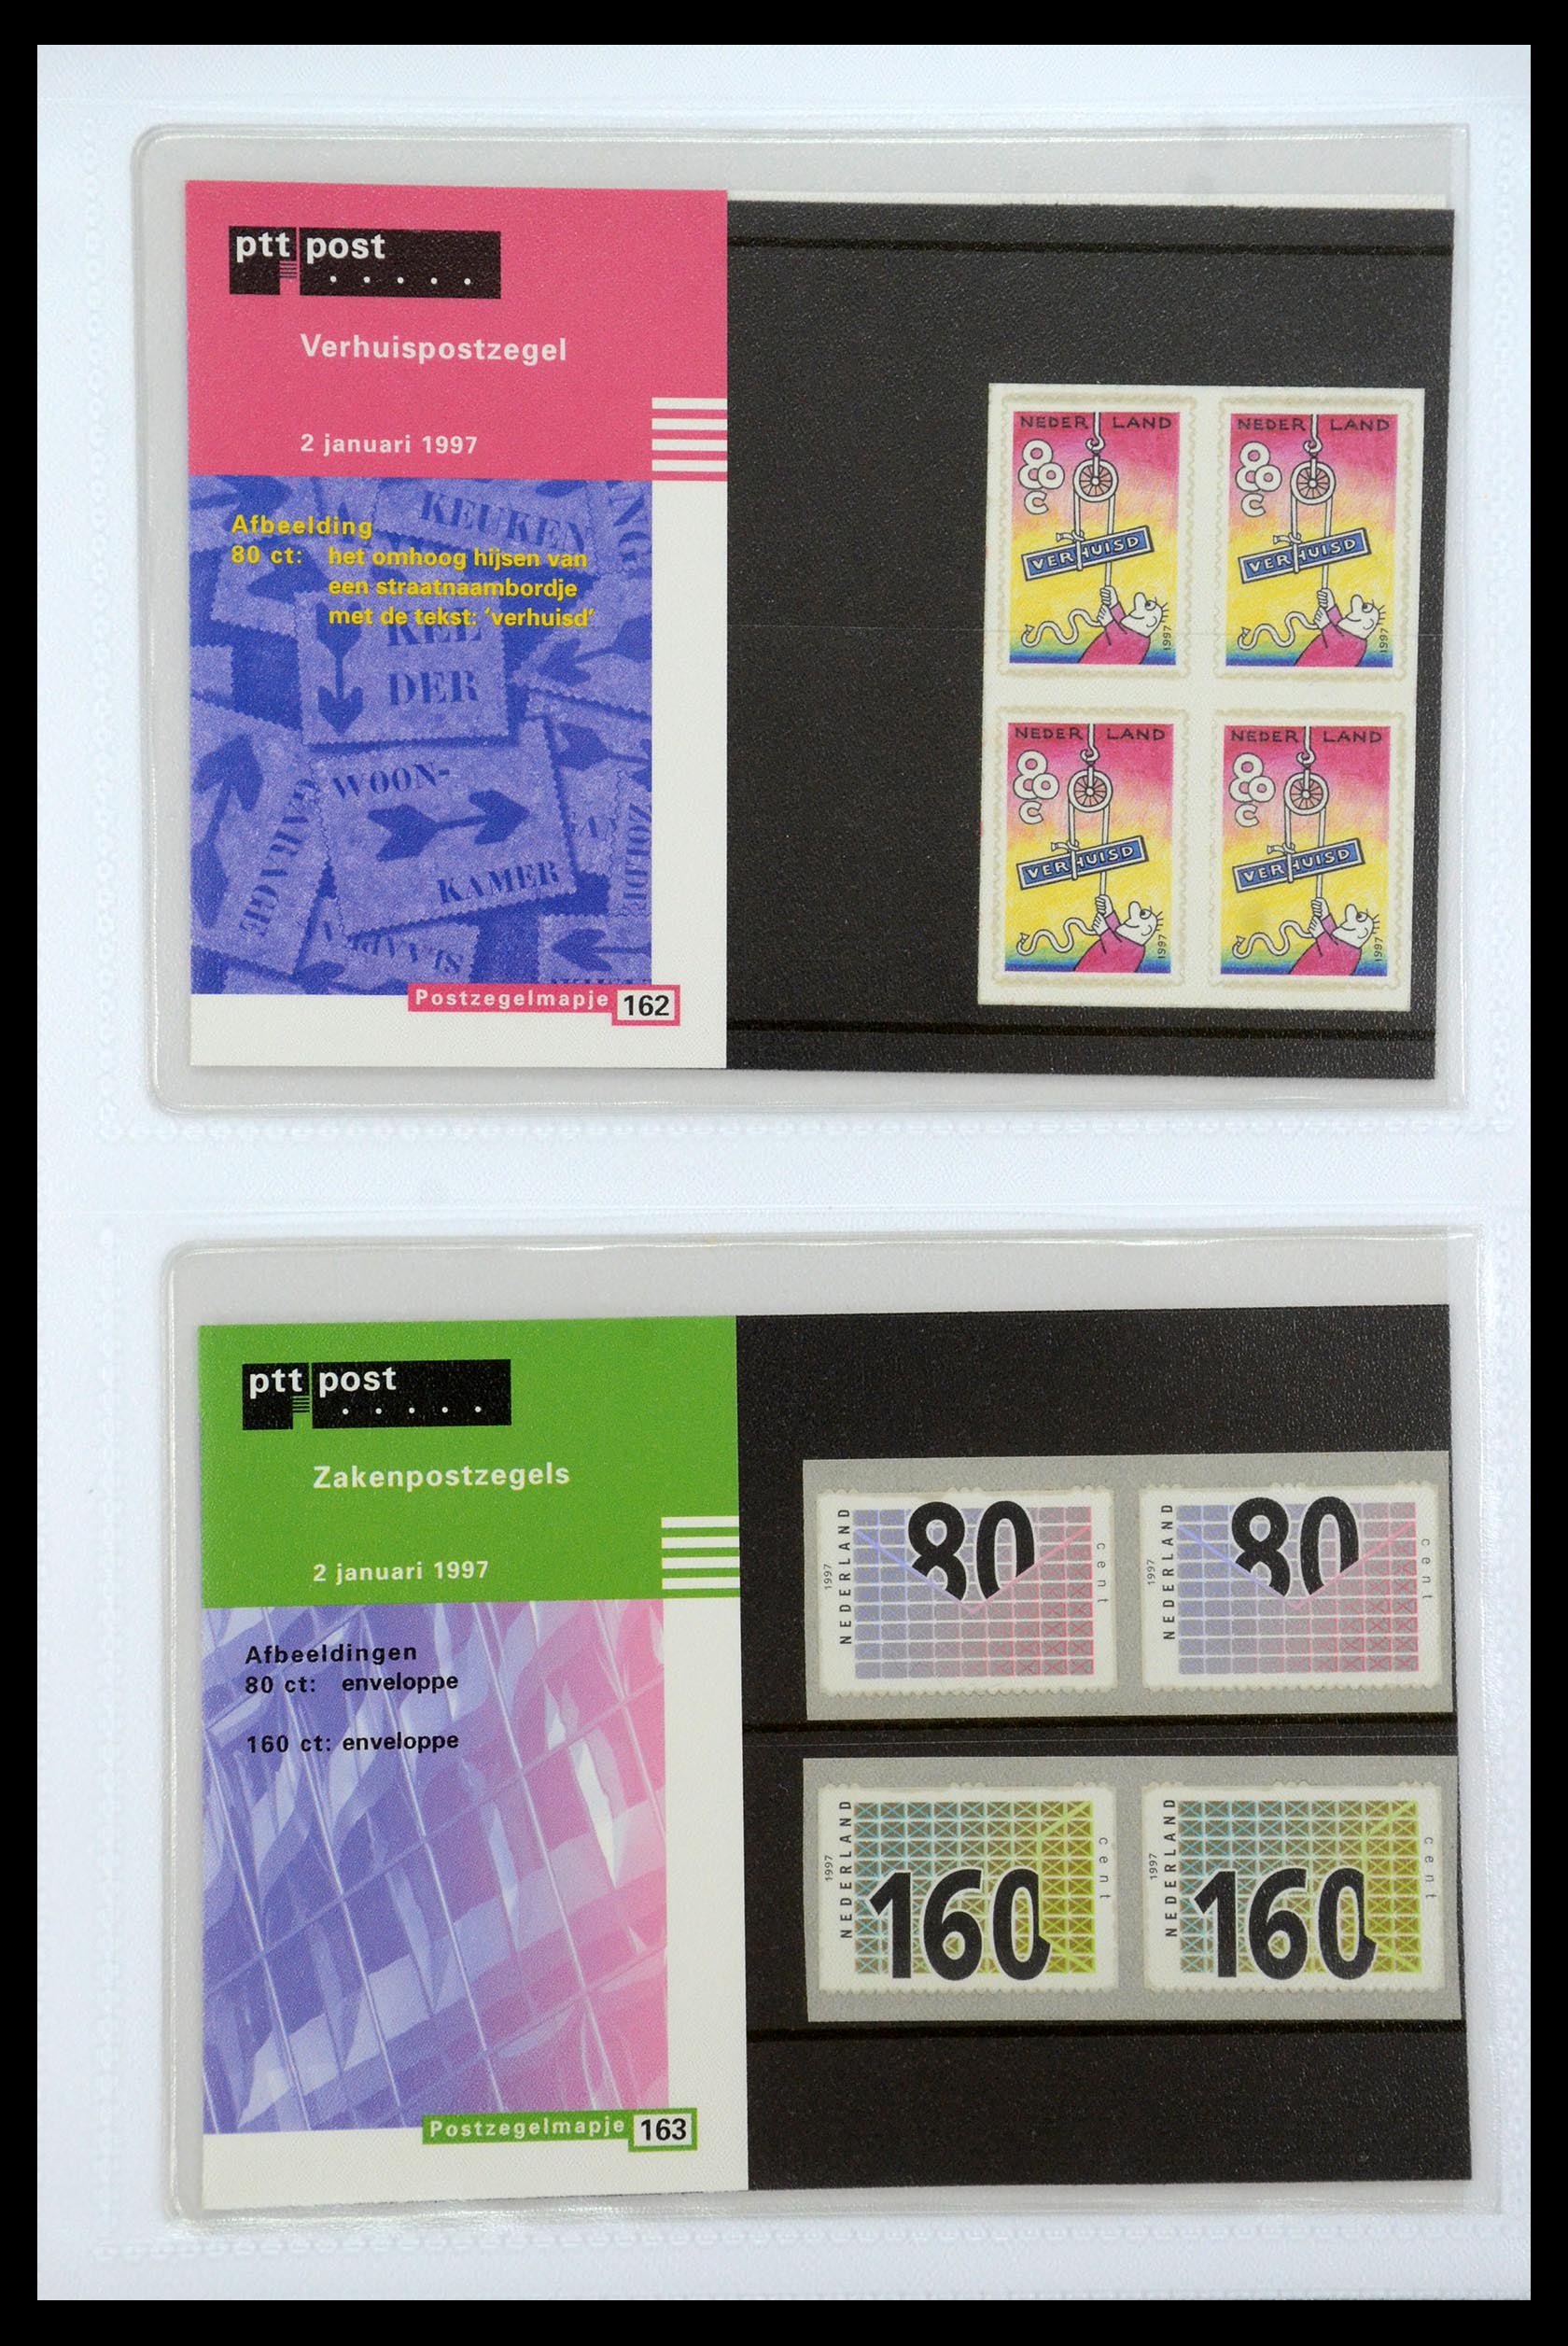 35947 084 - Stamp Collection 35947 Netherlands PTT presentation packs 1982-2019!